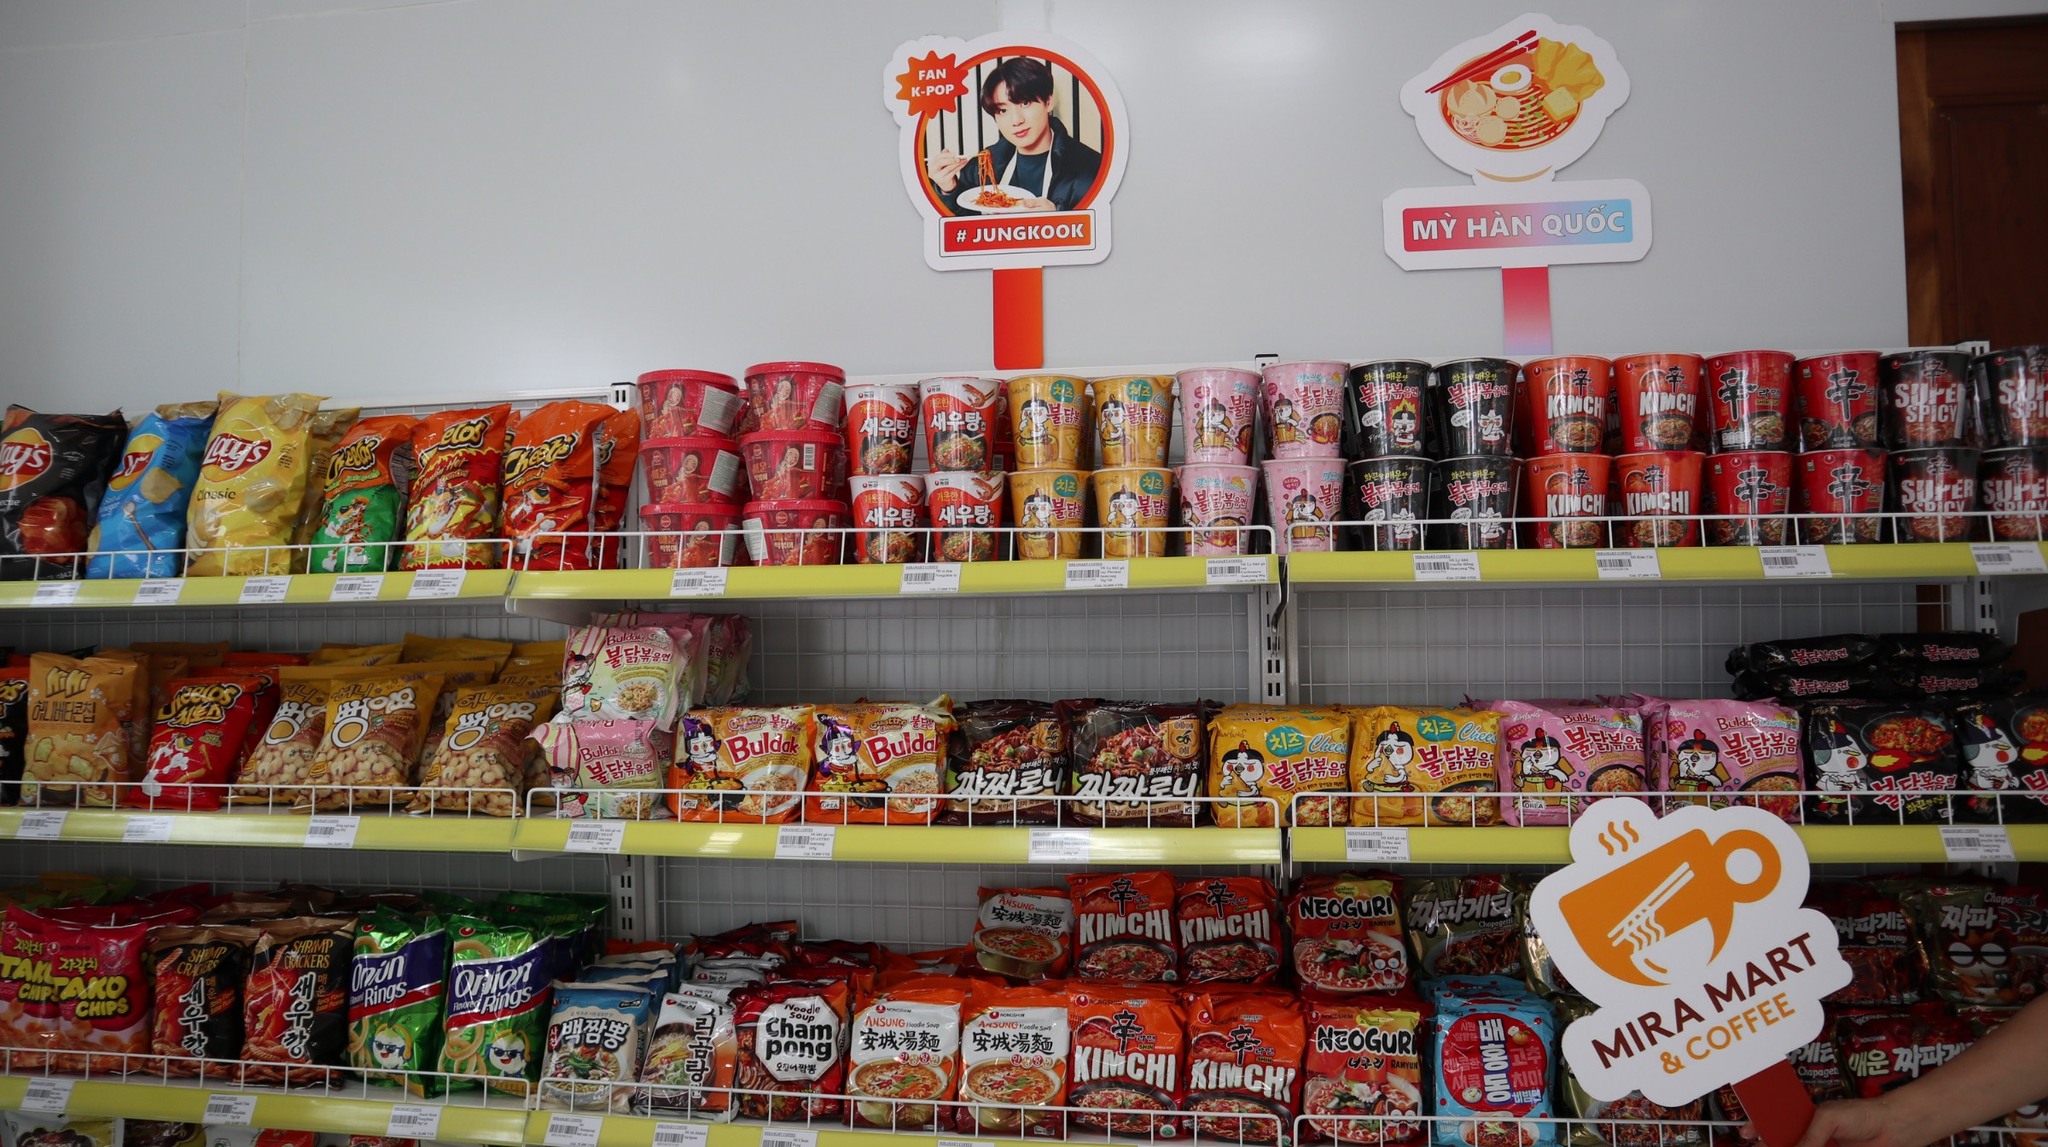 Cửa hàng có đầy đủ các loại mì Hàn Quốc.